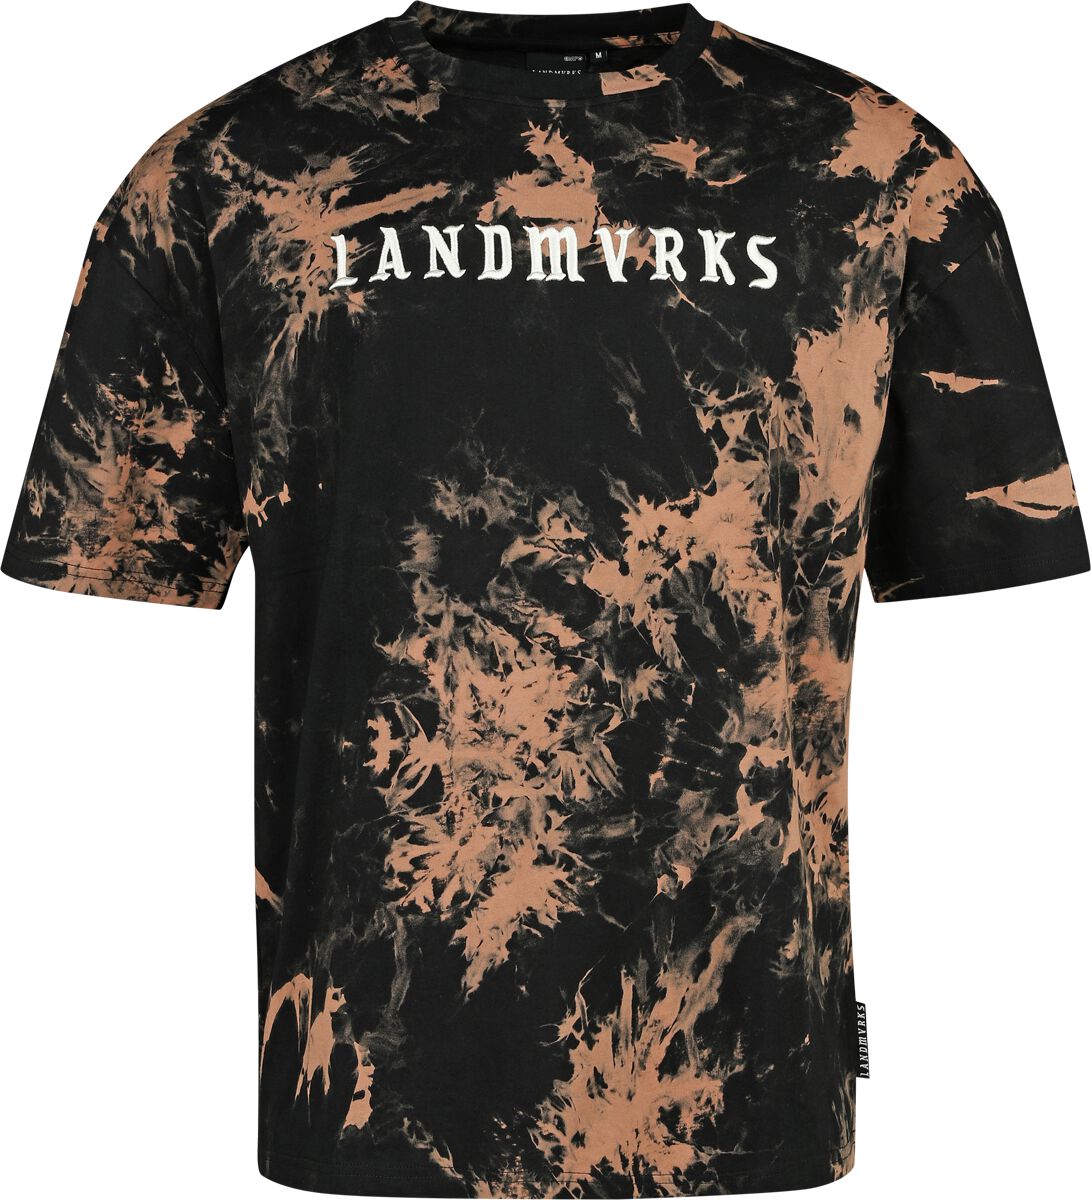 Landmvrks EMP Signature Collection T-Shirt schwarz braun in XL